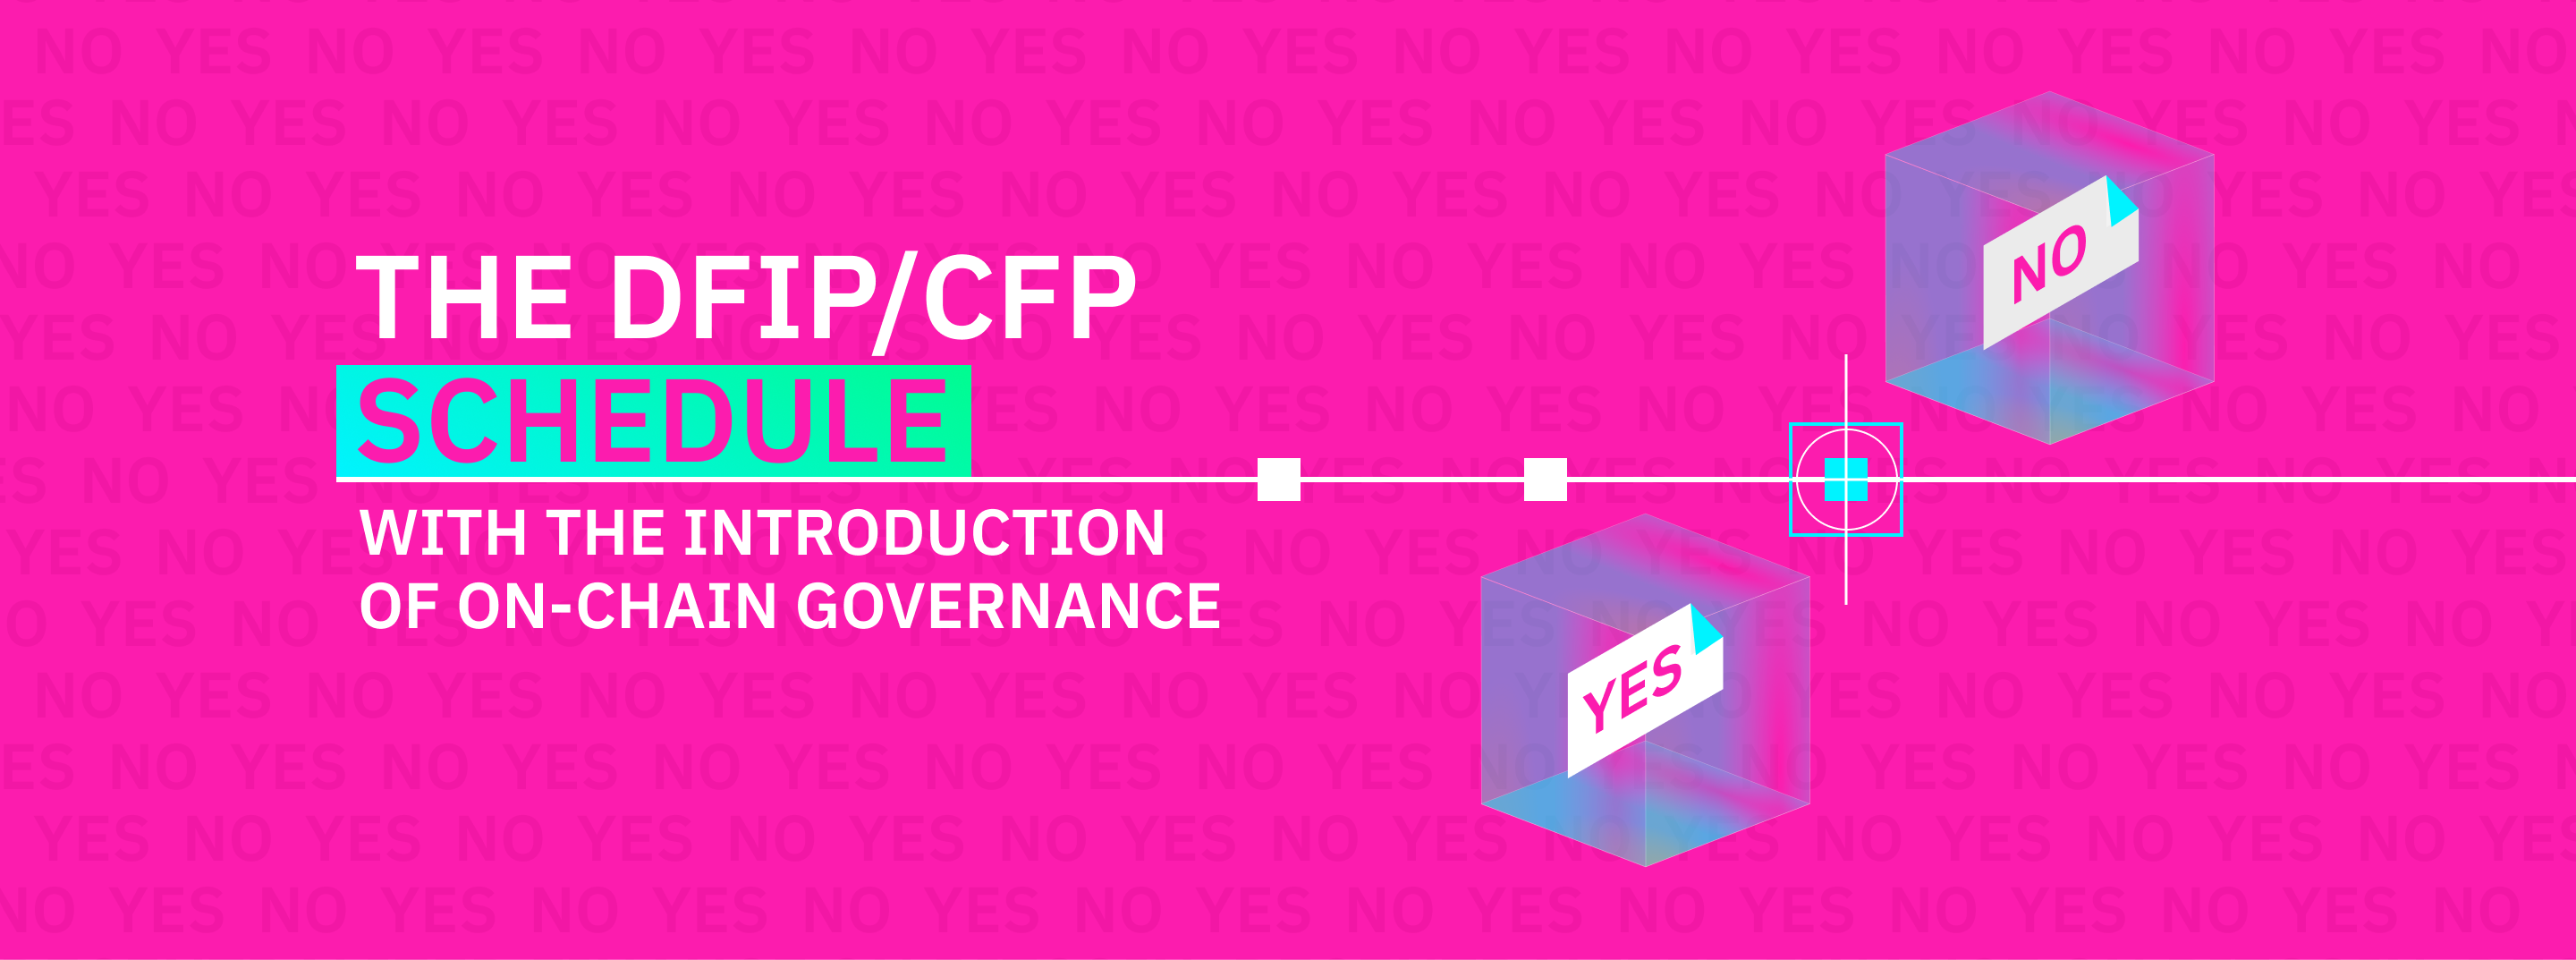 Upcoming DFIP/CFP Schedule Changes